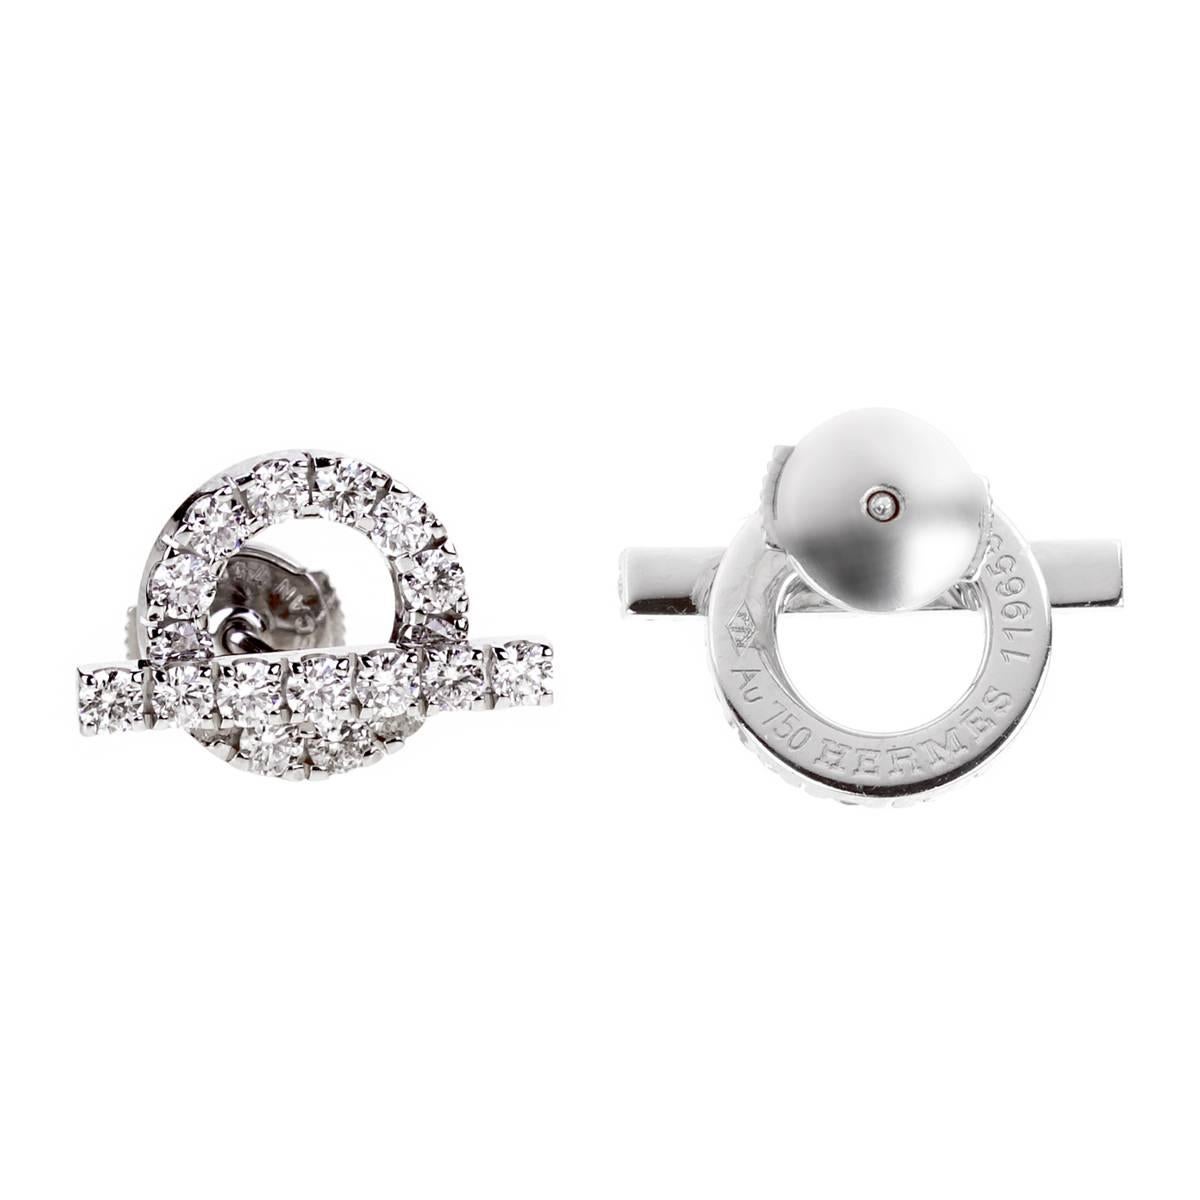 Une magnifique paire de boucles d'oreilles Hermès comprenant 1,14 des plus beaux diamants ronds de taille brillant Vvs Hermès en or blanc 18k. Les boucles d'oreilles mesurent 0,60